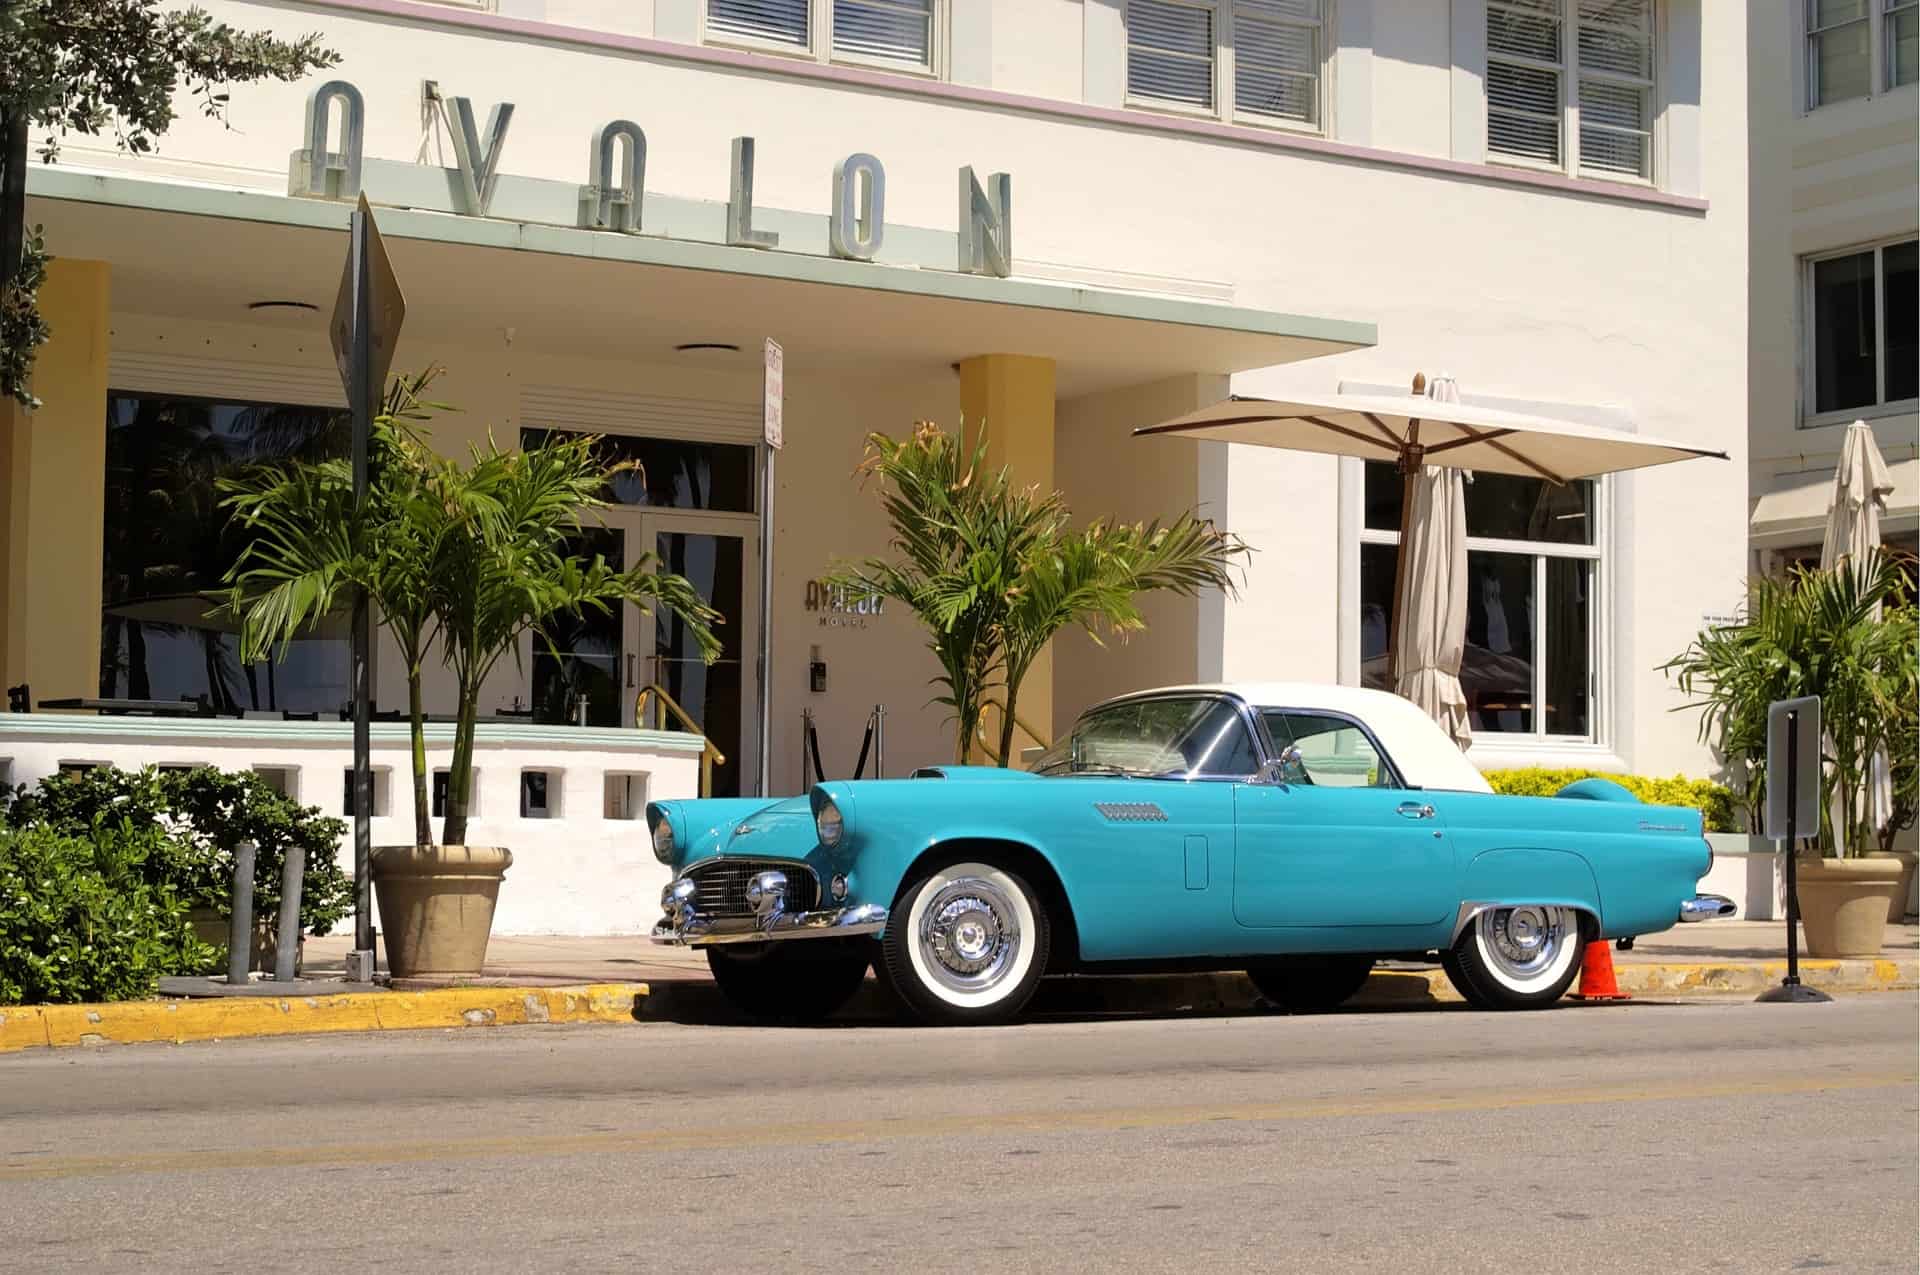 USA - Florida Bucket List - South Beach Avalon hotel and car